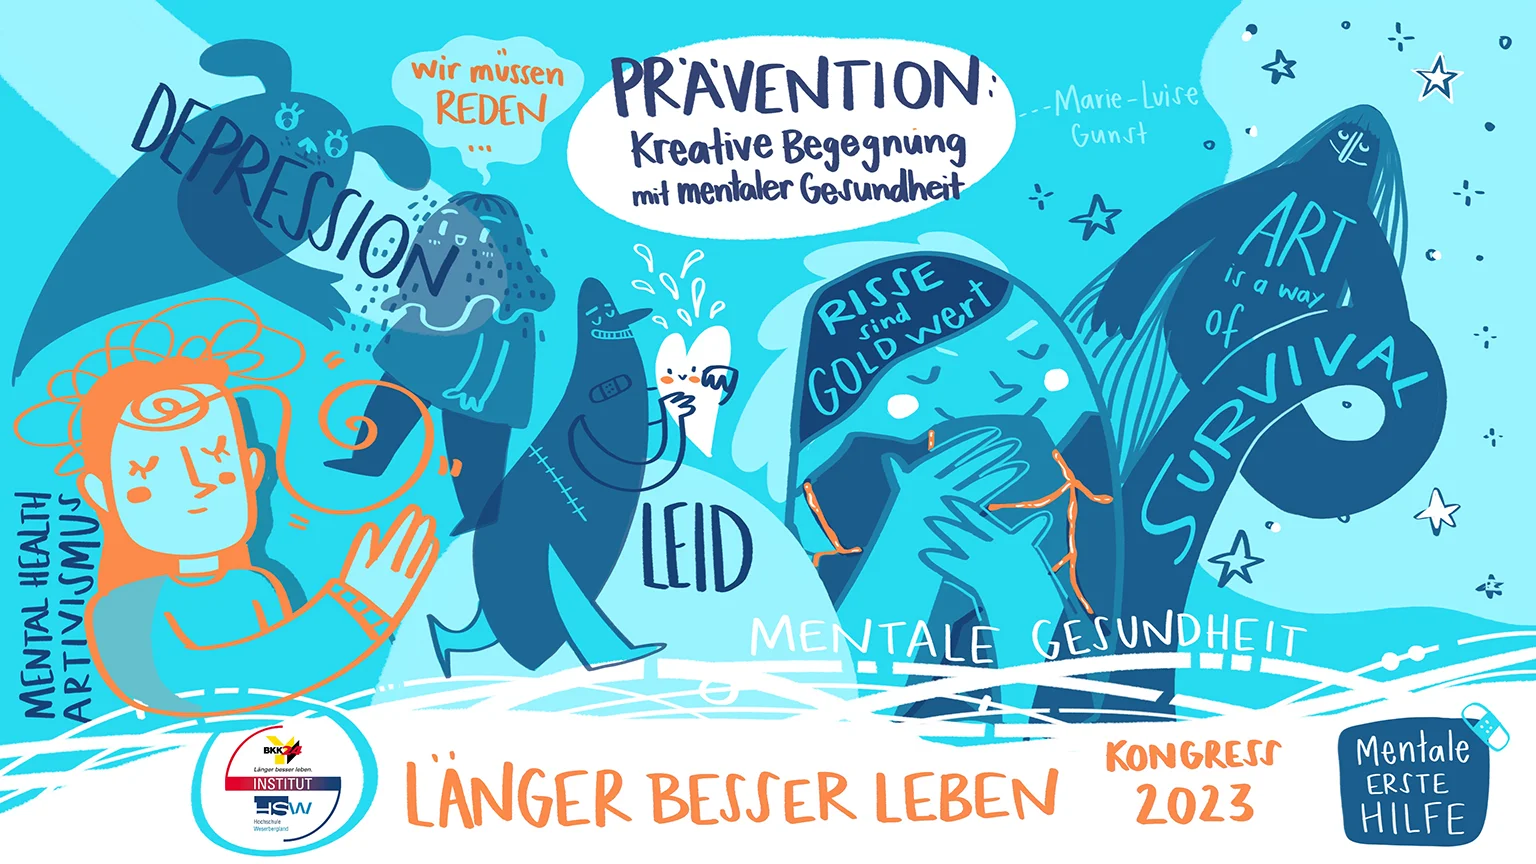 Prävention: Kreative Begegnung mit mentaler Gesundheit, Vortrag Marie-Luise Gunst, LBL-Kongress 2023